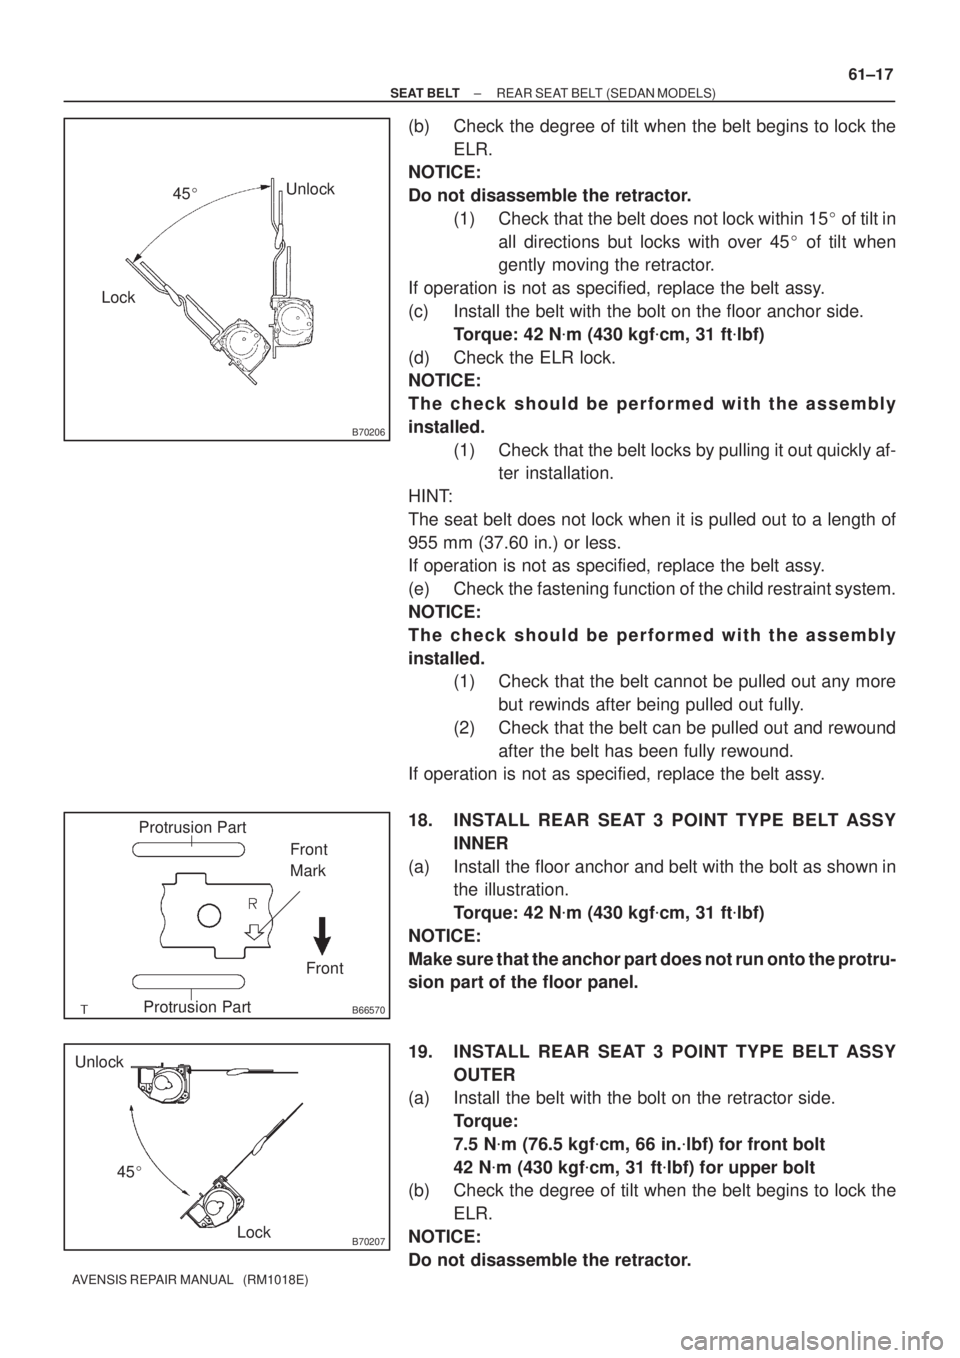 TOYOTA AVENSIS 2005  Service Repair Manual B70206
LockUnlock
45
B66570
Protrusion Part
Front Front
Mark
Protrusion Part
B70207Lock Unlock
45
± SEAT BELTREAR SEAT BELT (SEDAN MODELS)
61±17
AVENSIS REPAIR MANUAL   (RM1018E)
(b) Check the deg